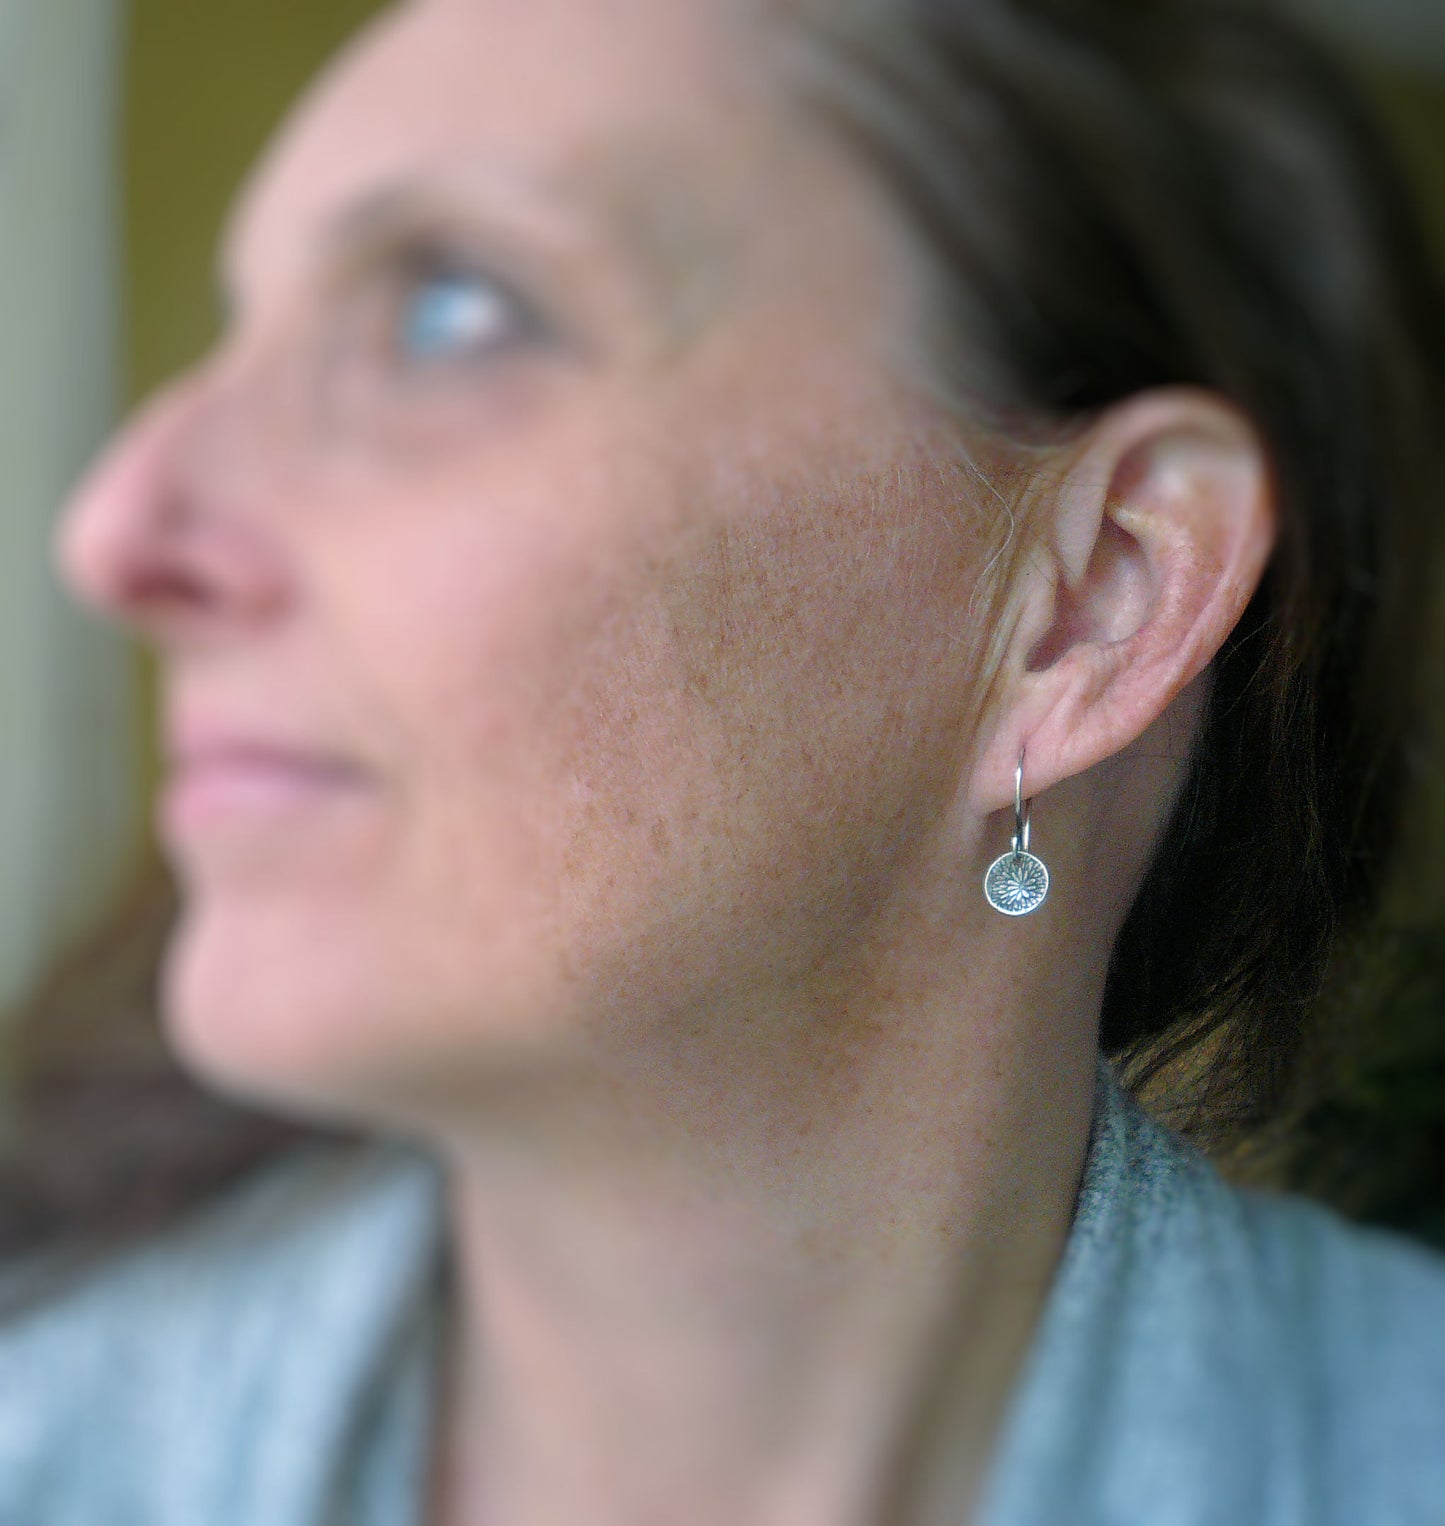 Bloom Earrings - Handmade. Oxidized fine and sterling silver dangle earrings